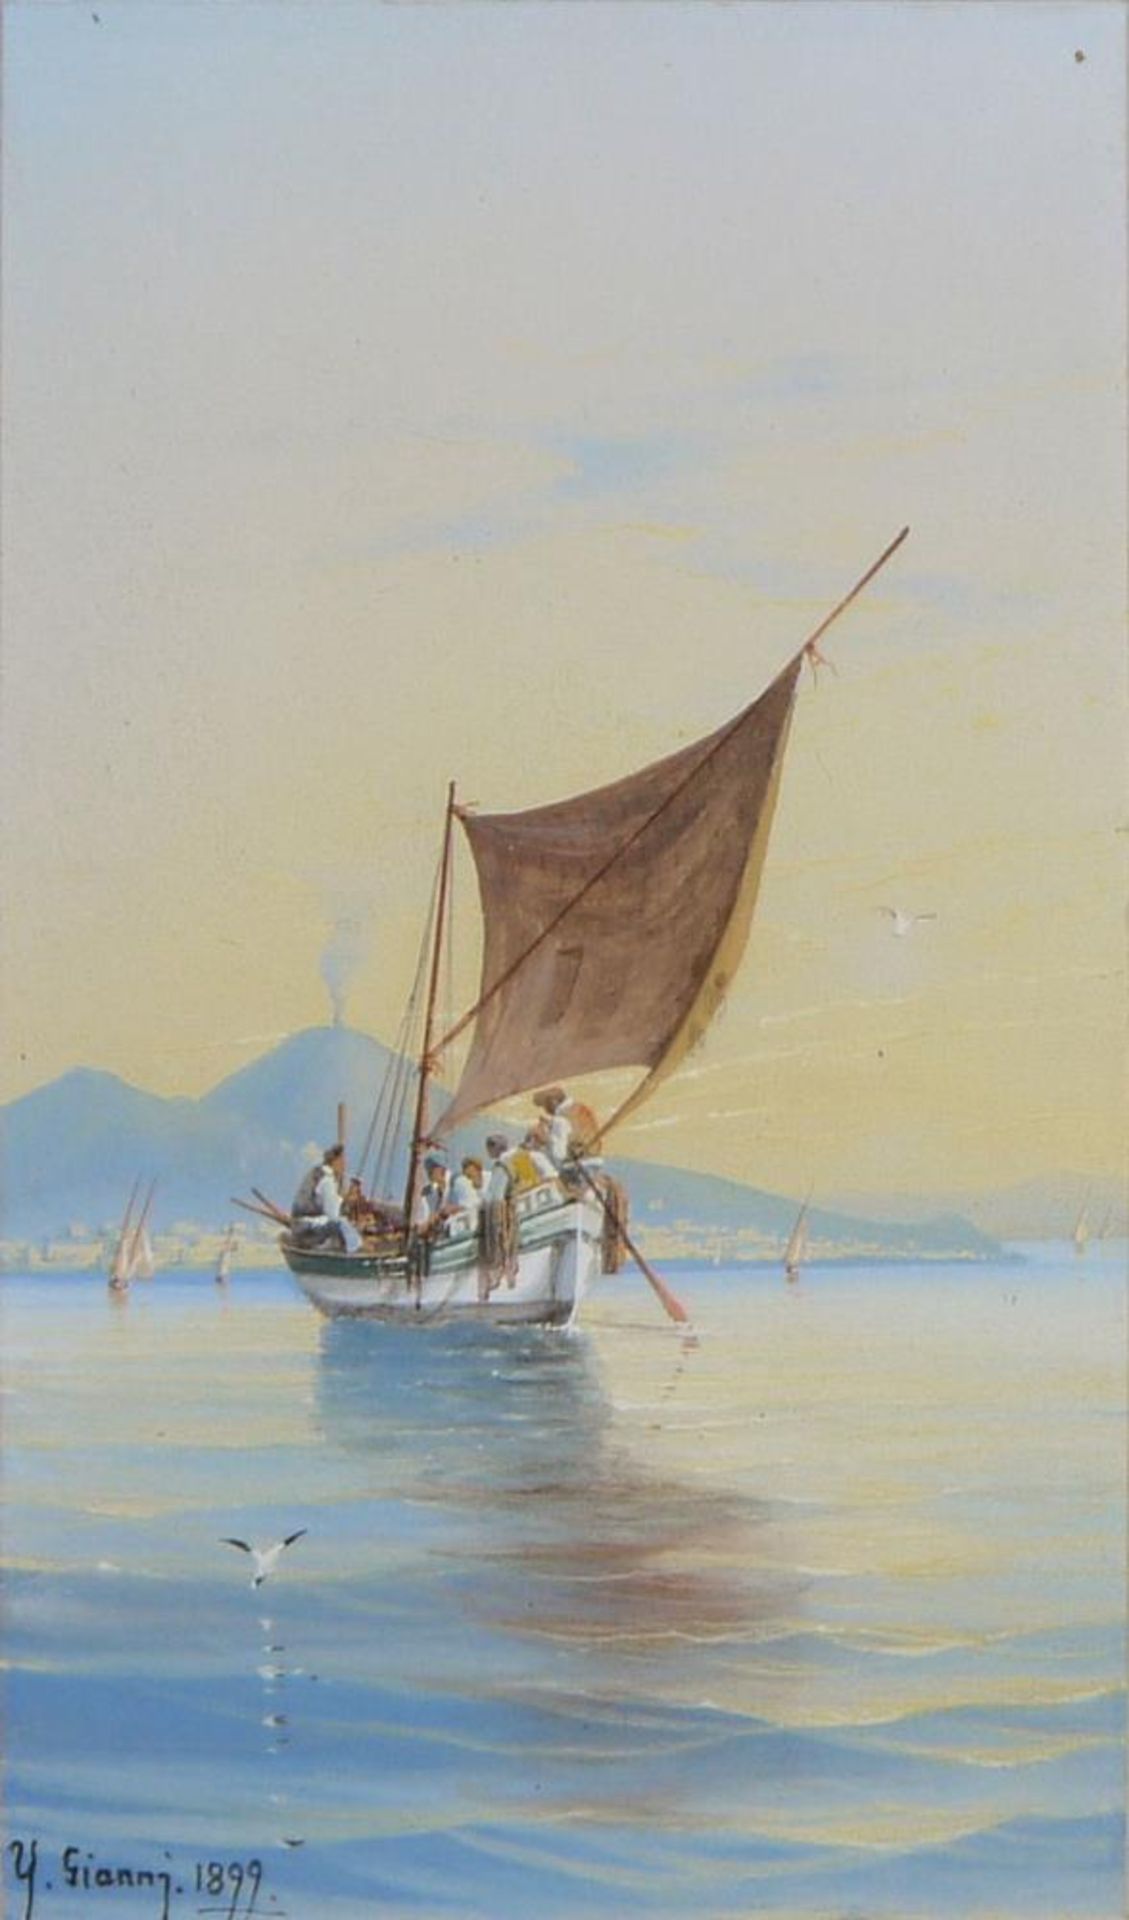 Y. Gianni, Fischerboote im Golf von Neapel (Napoli), 2 Gouachen von 1899, gerahmt Y. Gianni, - Image 3 of 3